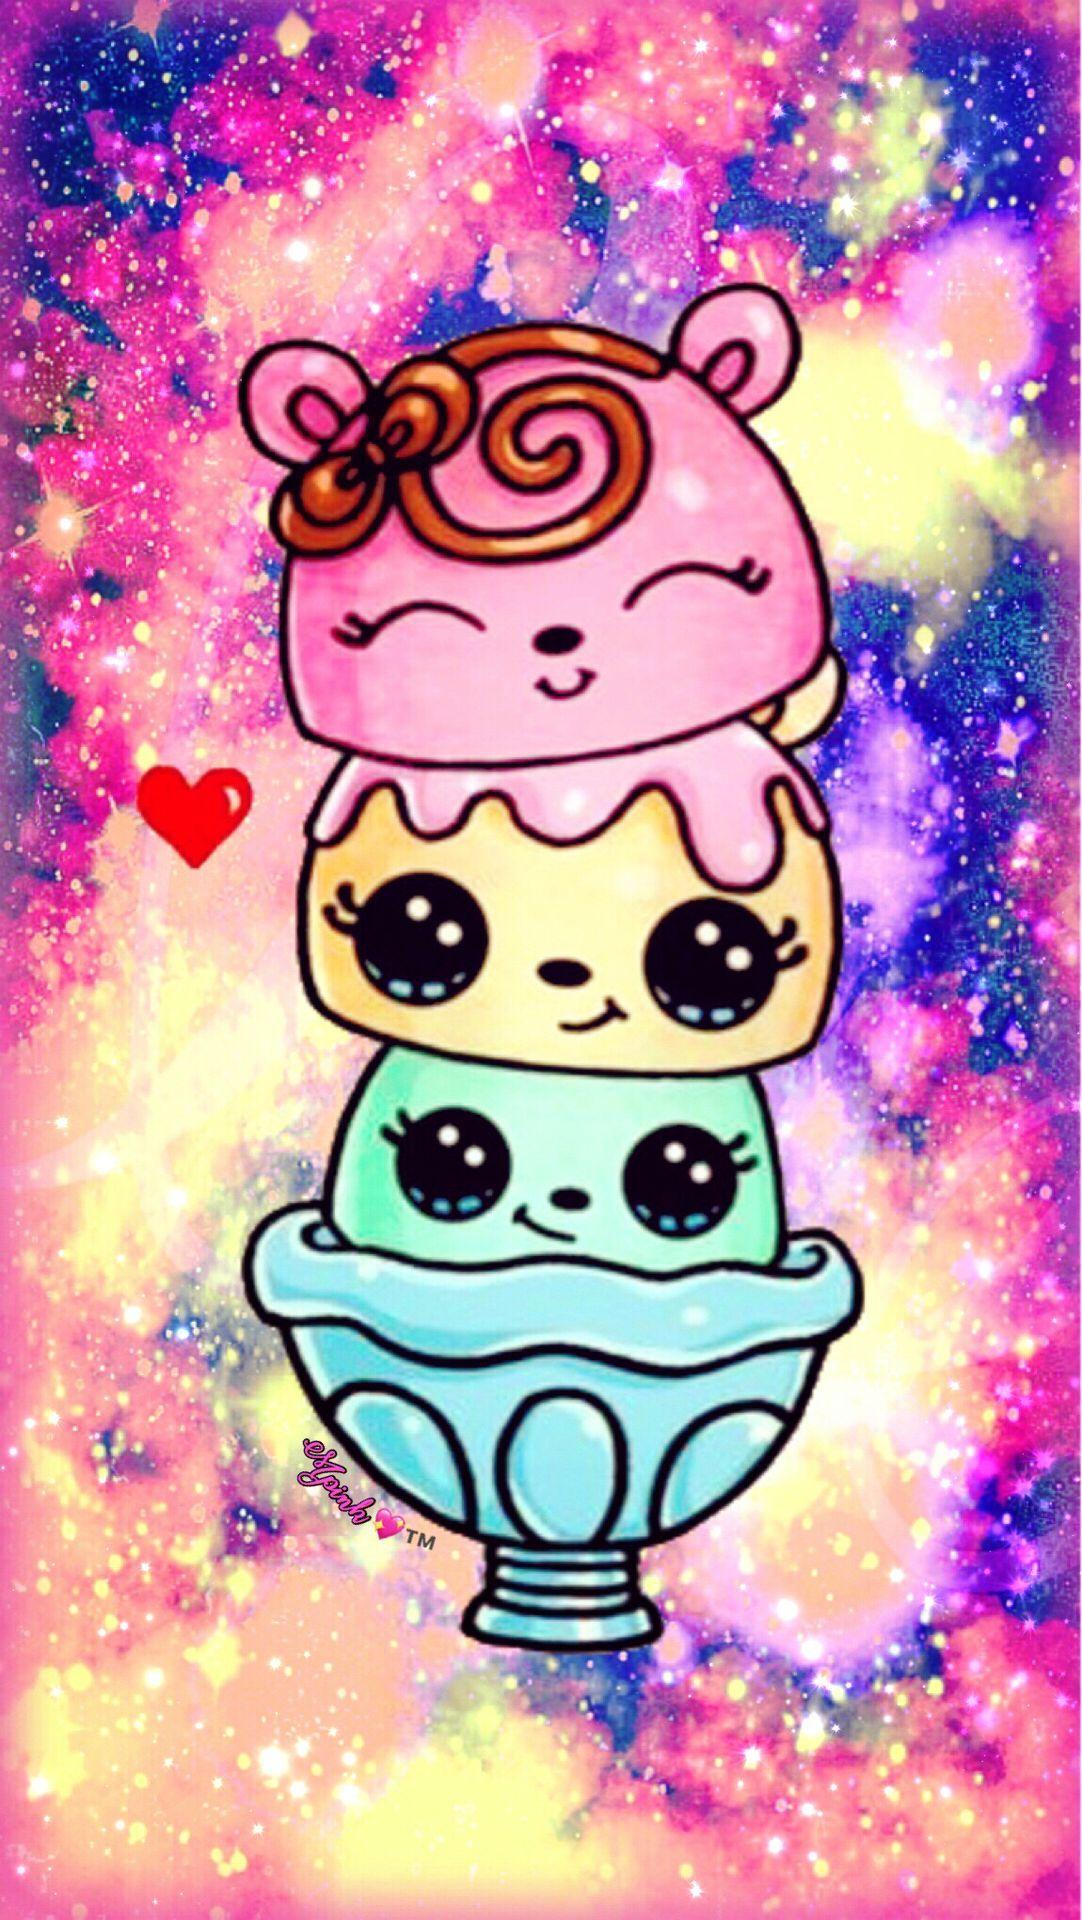 Cute Kawaii Icecream Galaxy Wallpaper #androidwallpaper